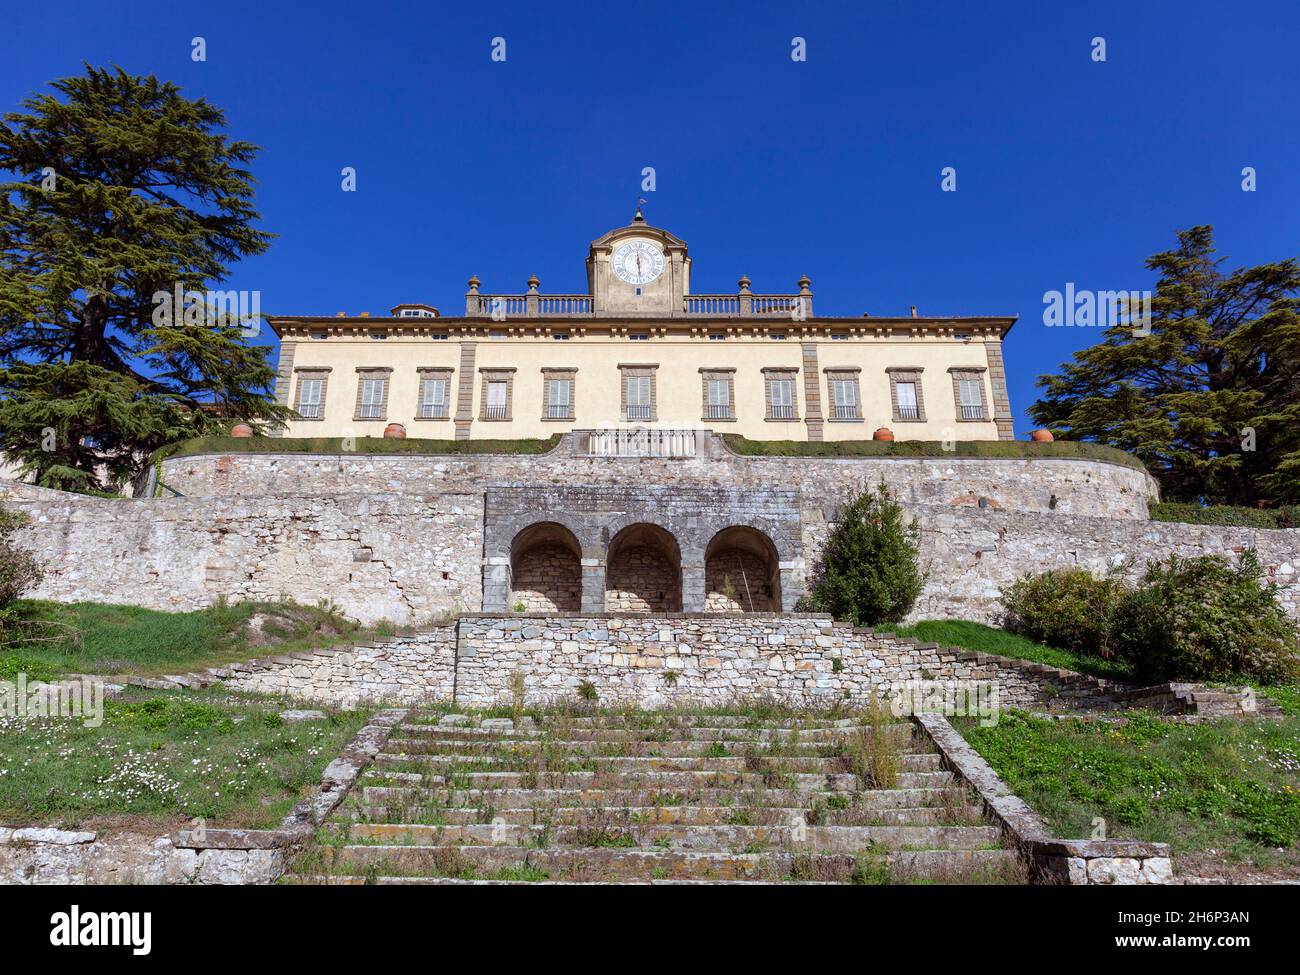 Europa, Toscana, San Donato in collina, Fattoria Torre a Cona Azienda vinicola toscana con la storica residenza Foto Stock